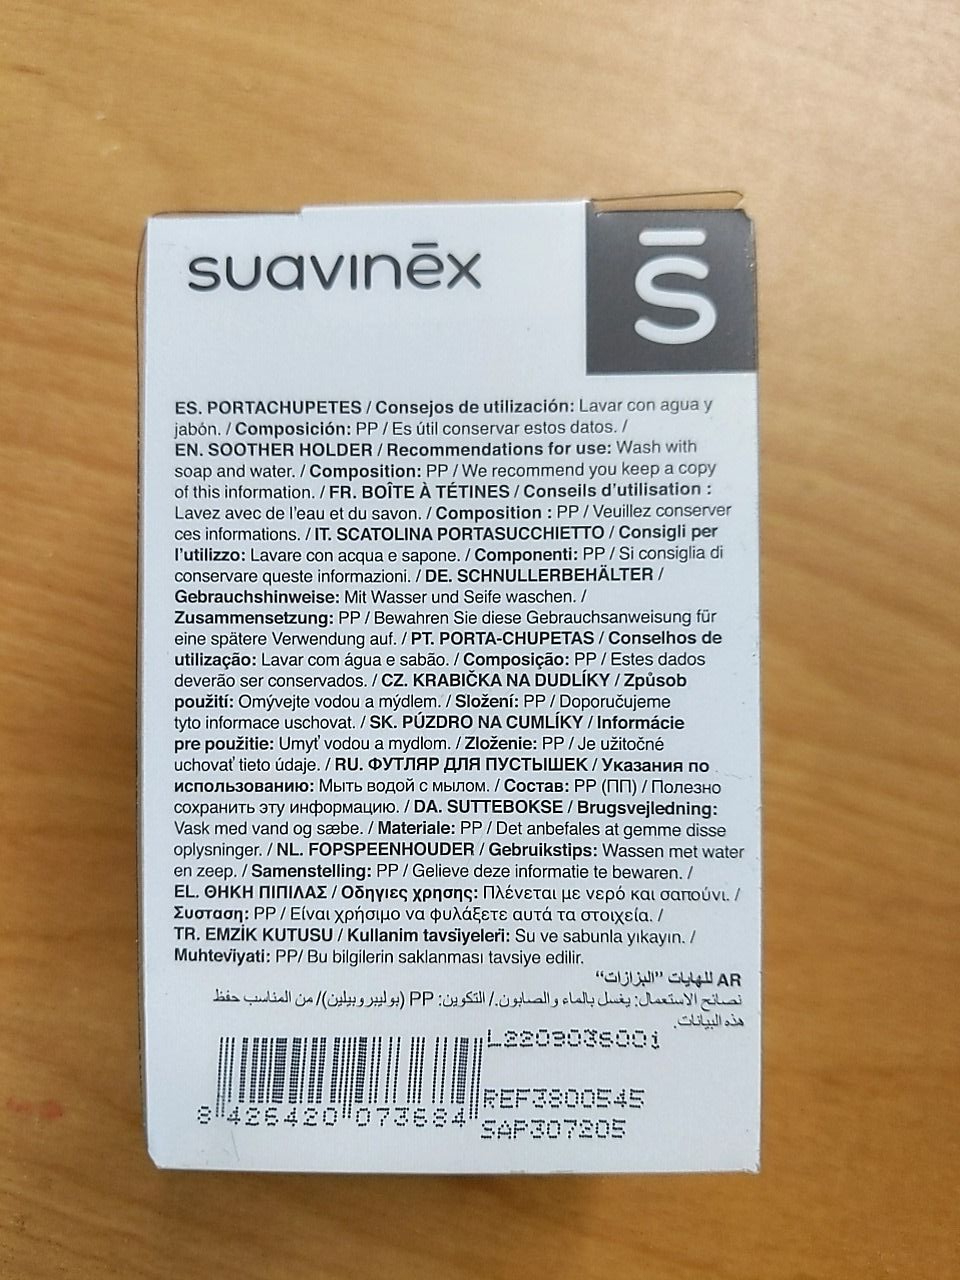 Krabička na dudlíky - 3 ks suavinex 